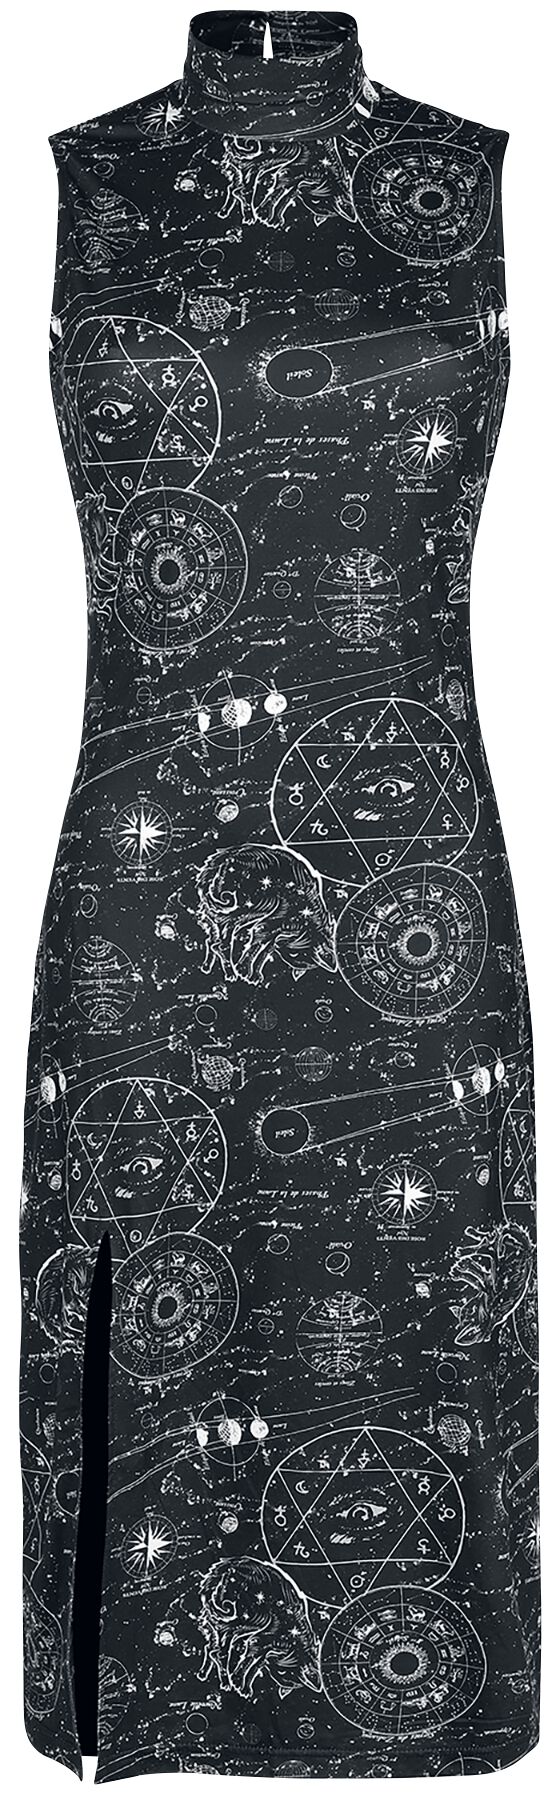 Jawbreaker - Gothic Kleid knielang - Alchemy Cat Print Midi Cut Out Dress - XS bis XXL - für Damen - Größe XS - schwarz/weiß